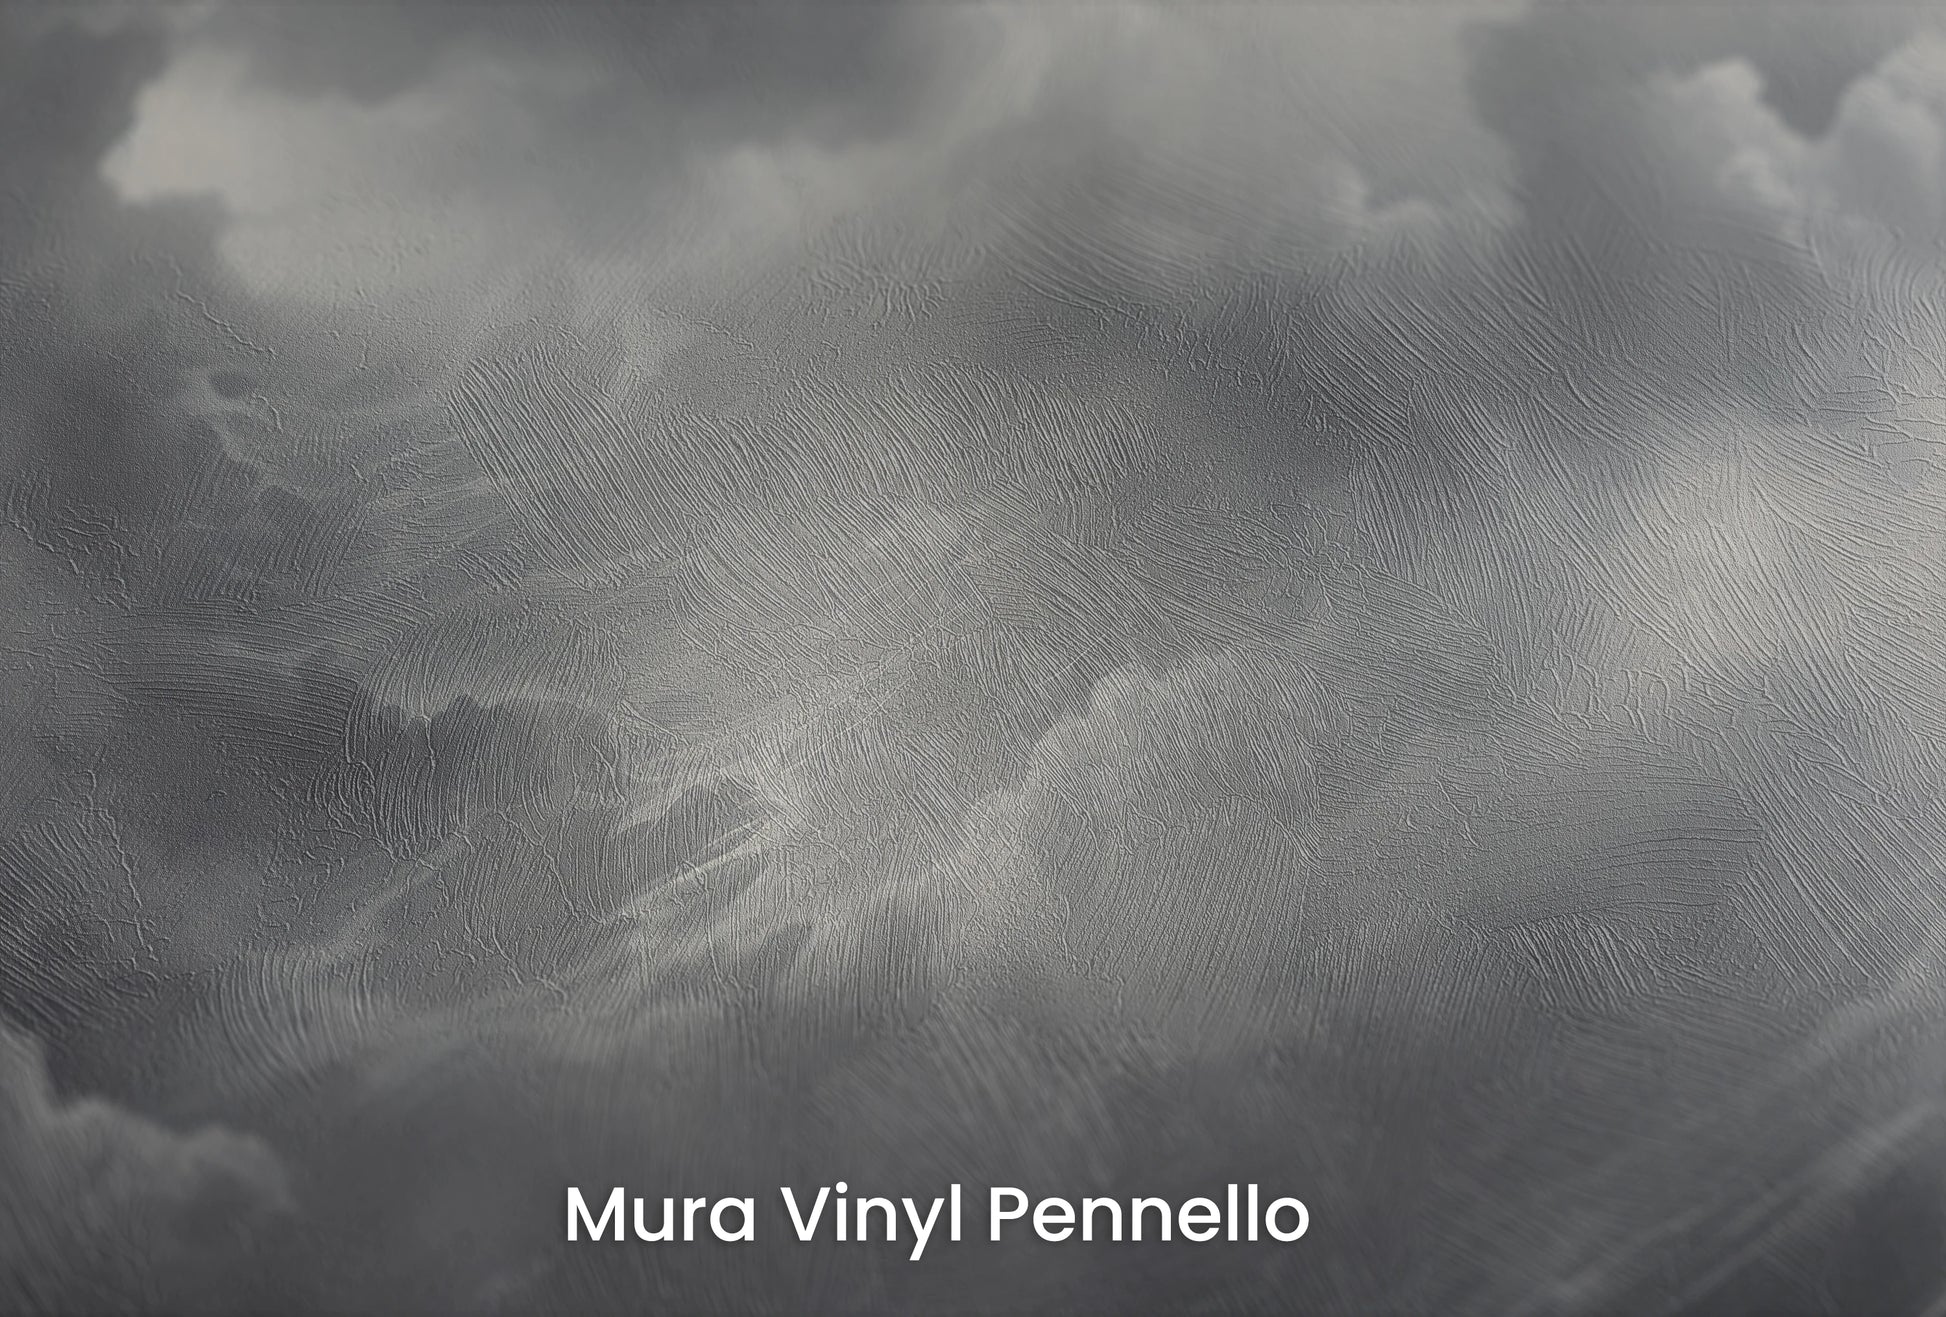 Zbliżenie na artystyczną fototapetę o nazwie Storm's Crescendo na podłożu Mura Vinyl Pennello - faktura pociągnięć pędzla malarskiego.